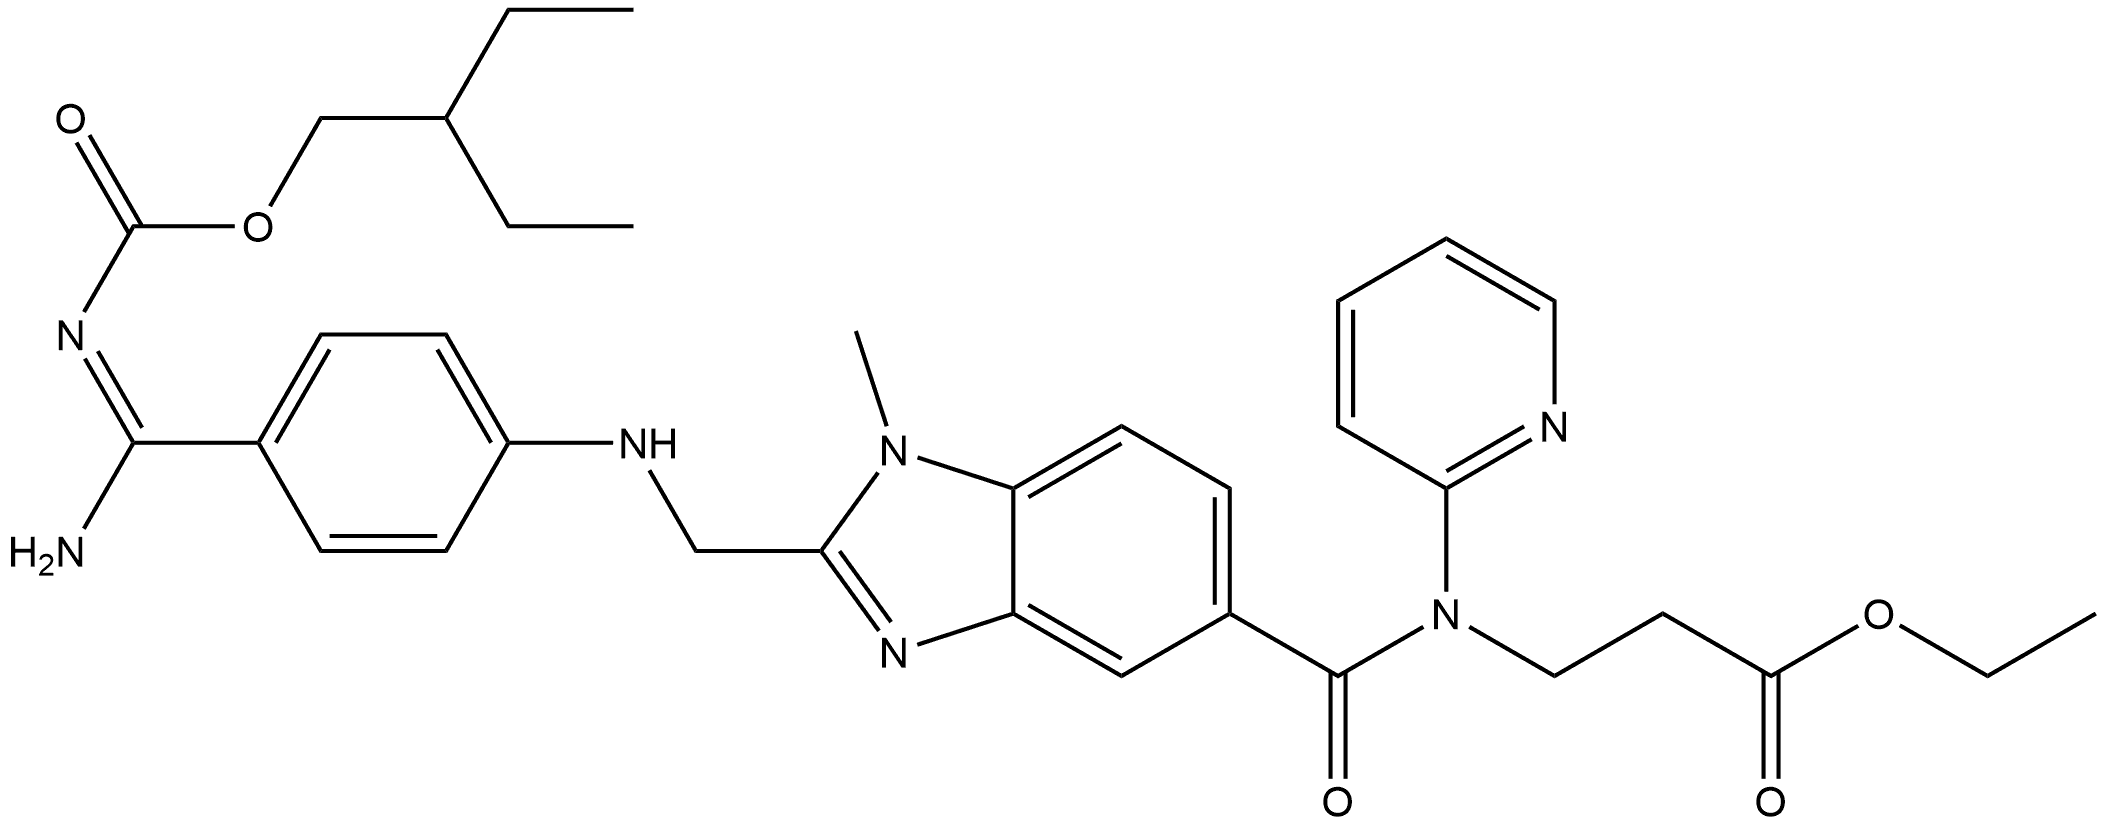 β-Alanine, N-[[2-[[[4-[(E)-amino[[(2-ethylbutoxy)carbonyl]imino]methyl]phenyl]amino]methyl]-1-methyl-1H-benzimidazol-5-yl]carbonyl]-N-2-pyridinyl-, ethyl ester|β-Alanine, N-[[2-[[[4-[(E)-amino[[(2-ethylbutoxy)carbonyl]imino]methyl]phenyl]amino]methyl]-1-methyl-1H-benzimidazol-5-yl]carbonyl]-N-2-pyridinyl-, ethyl ester